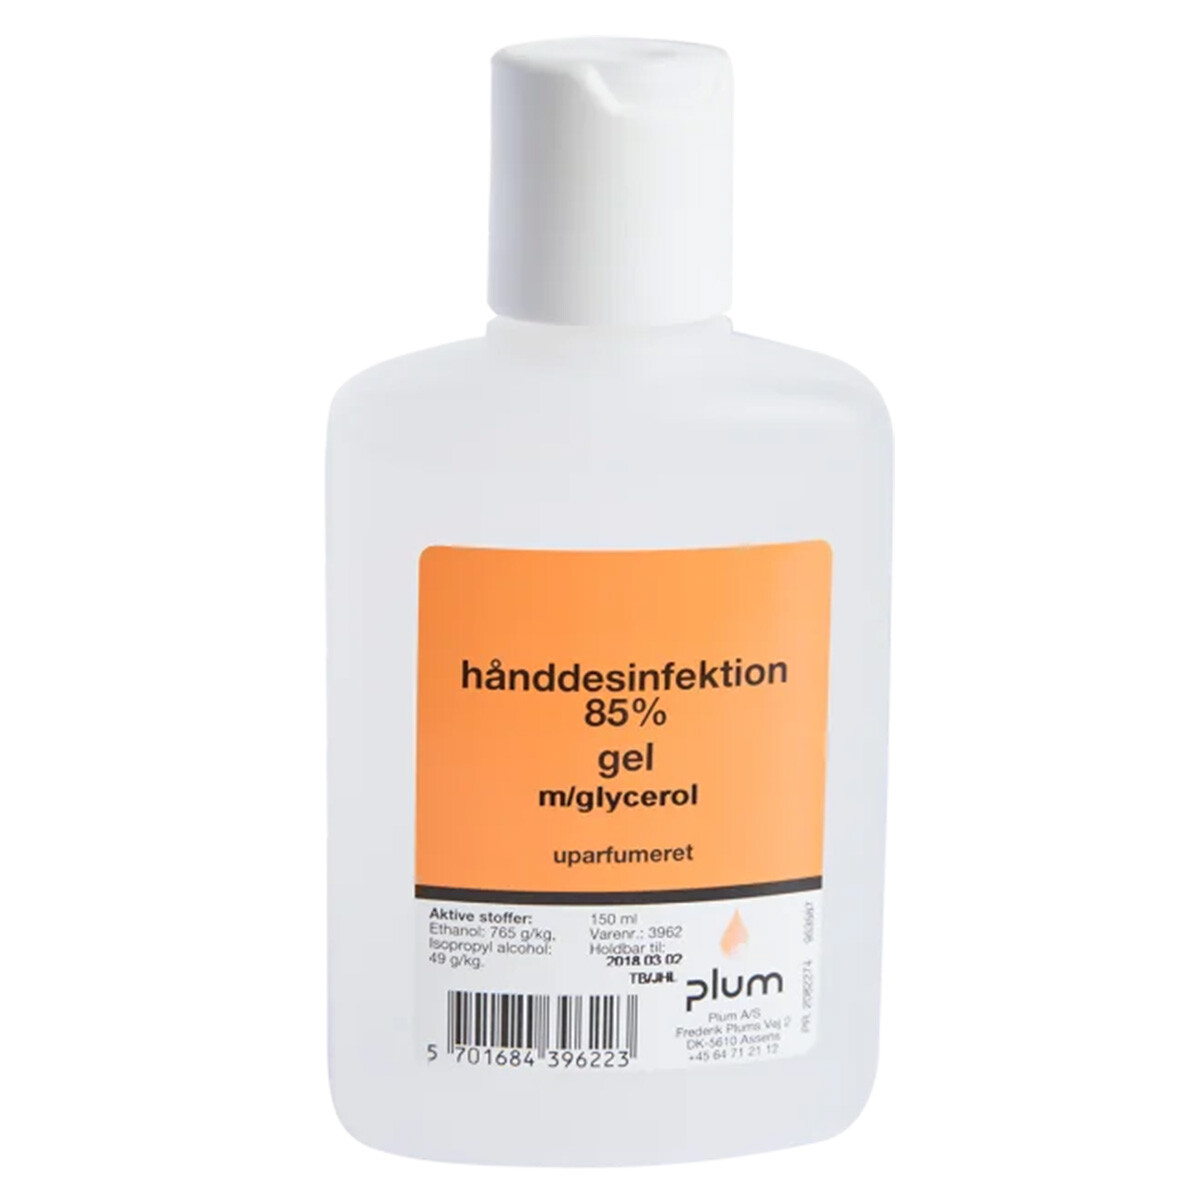 Se Plum hånddesinfektion 85% gel 150 ml hos Specialbutikken